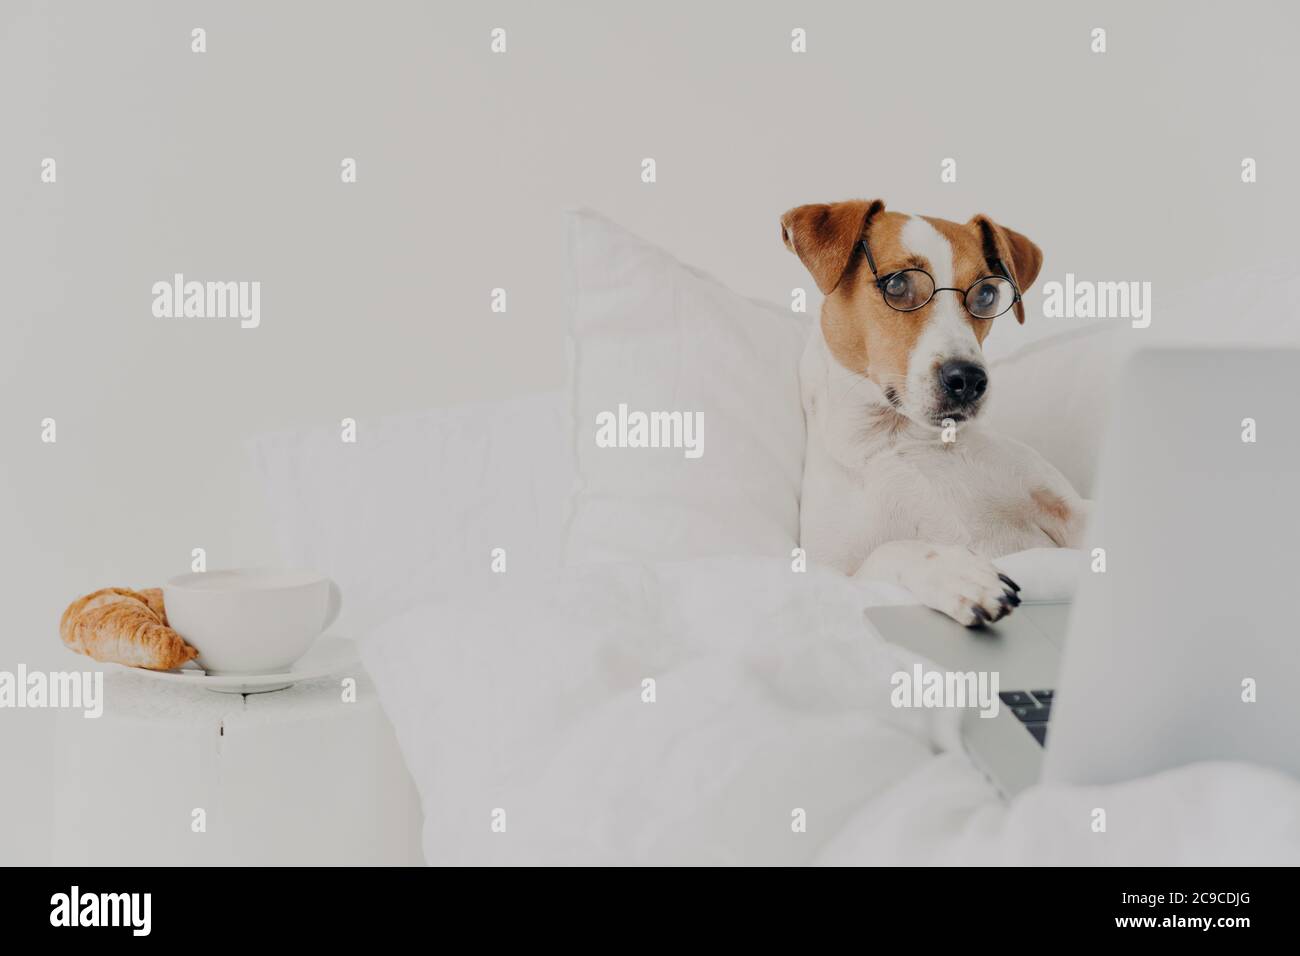 Perro de raza inteligente permanece en la cama y trabaja en el ordenador portátil, lleva gafas, tipos con patas en el teclado y centrado en la pantalla, se encuentra bajo blanco Foto de stock